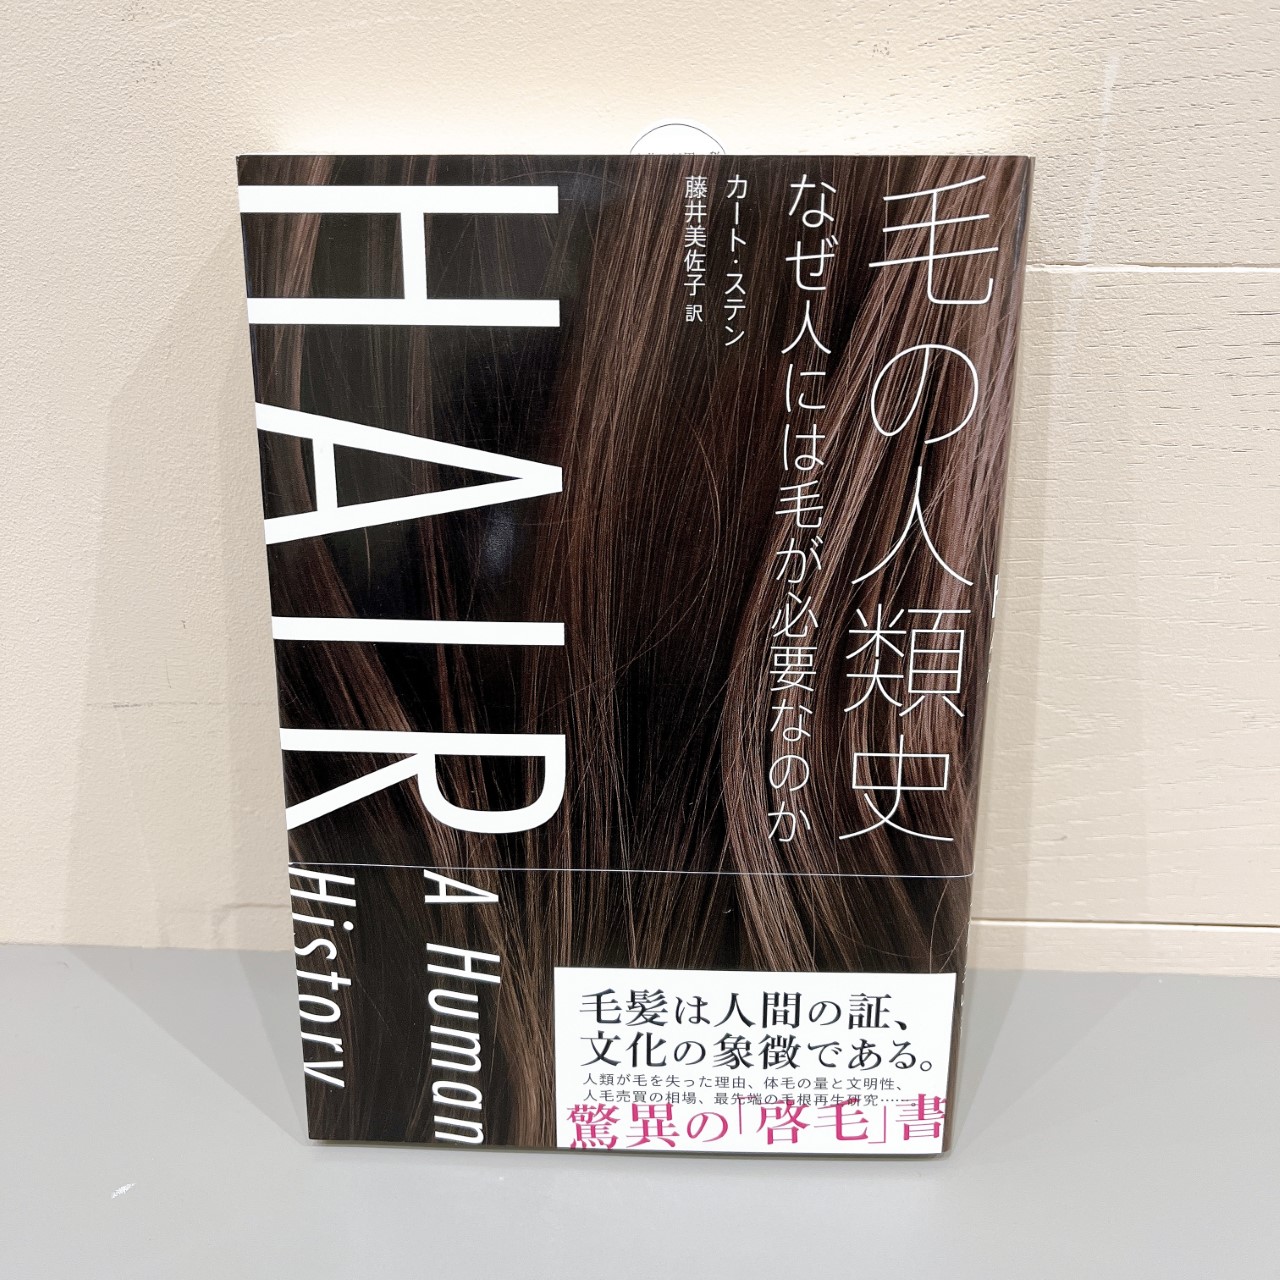 カート・ステン『毛の人類史』太田出版